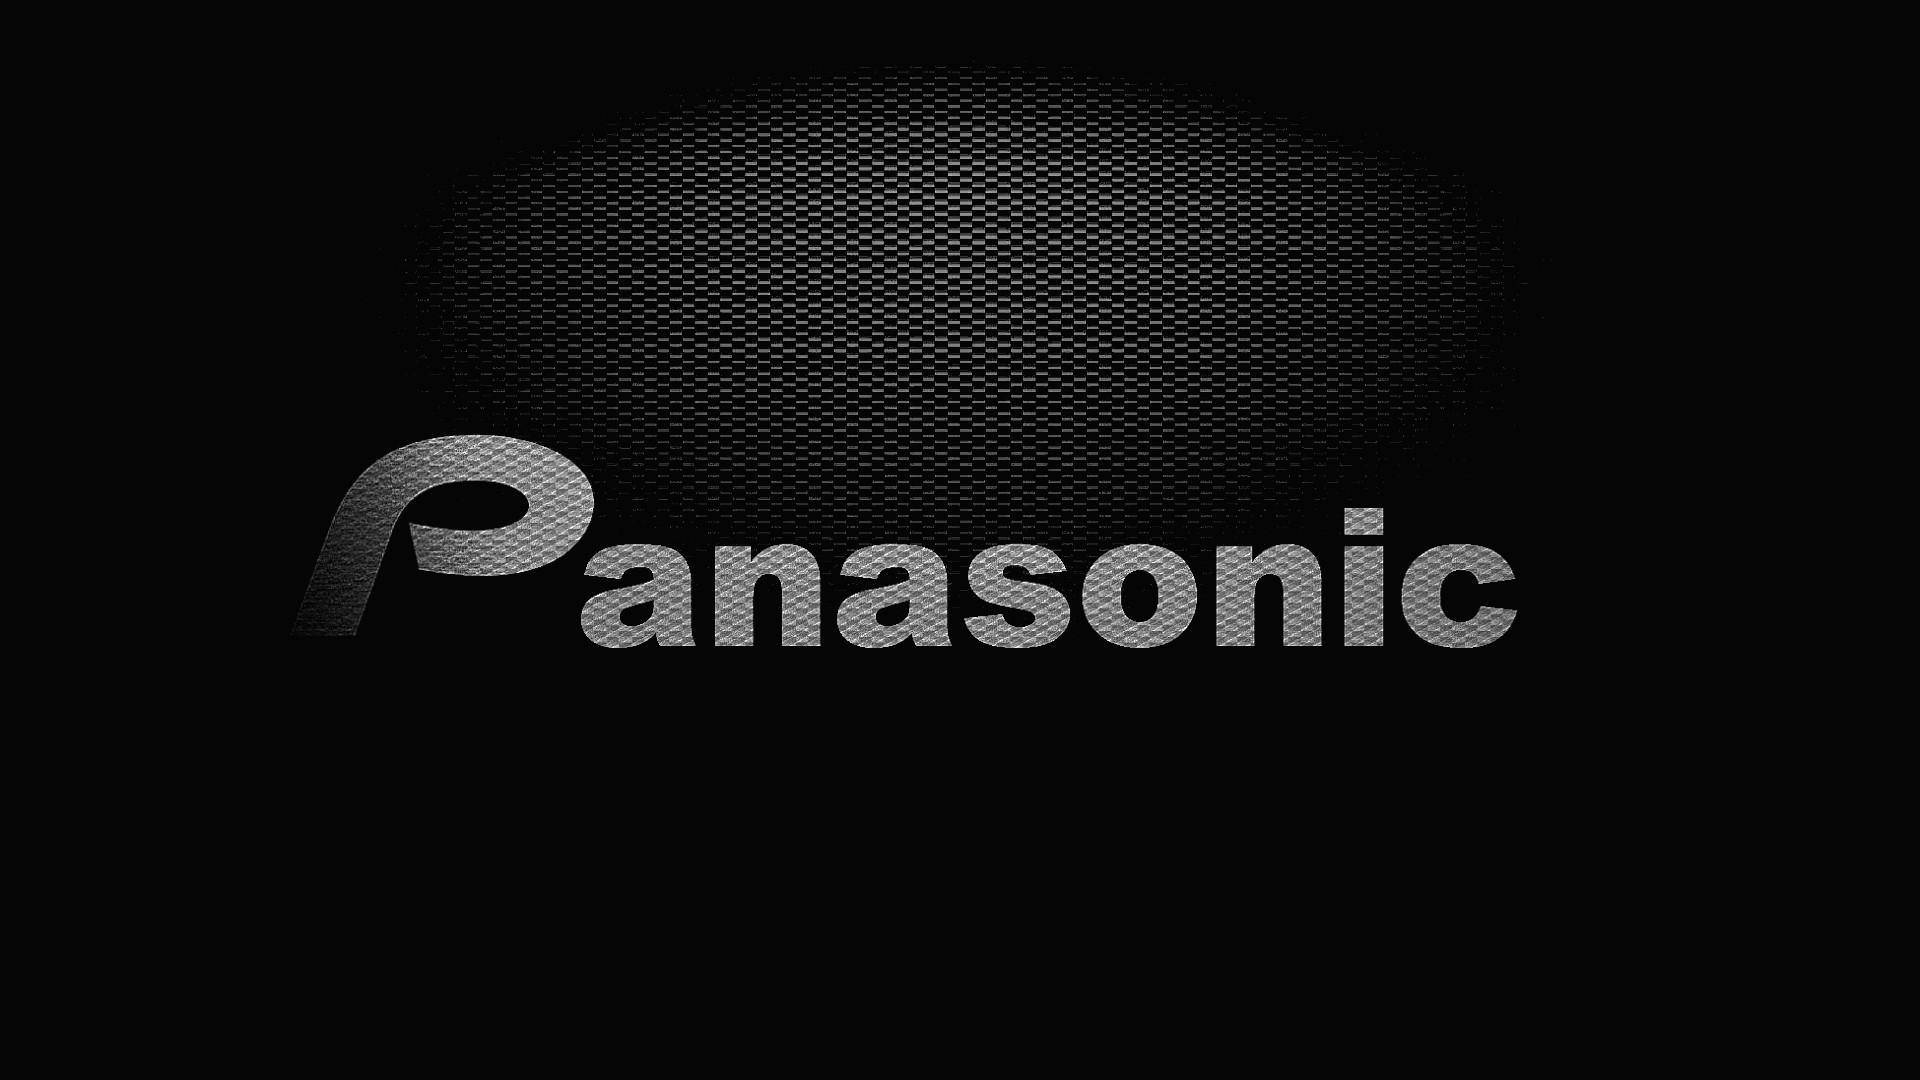 Grey Panasonic In Black Wallpaper